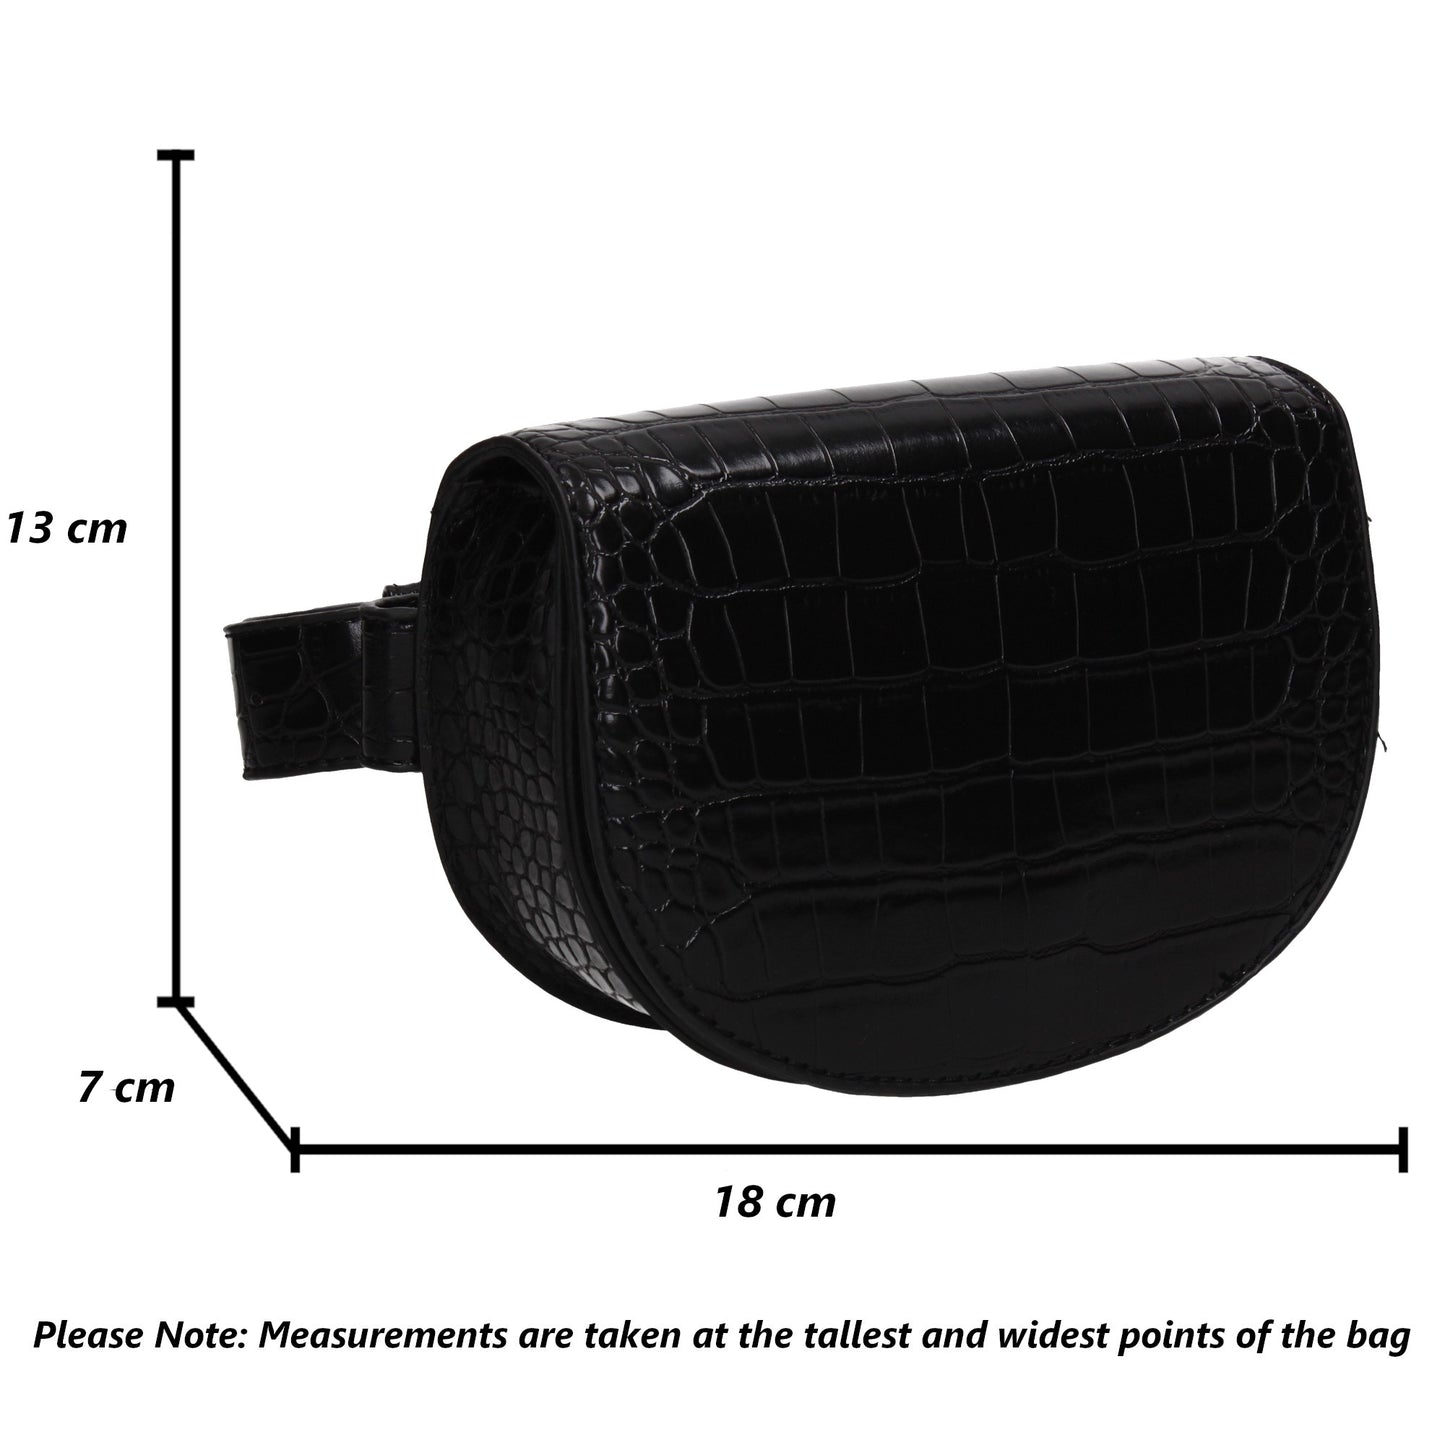 Aminah Faux Leather Croc effect Belt Bag Black